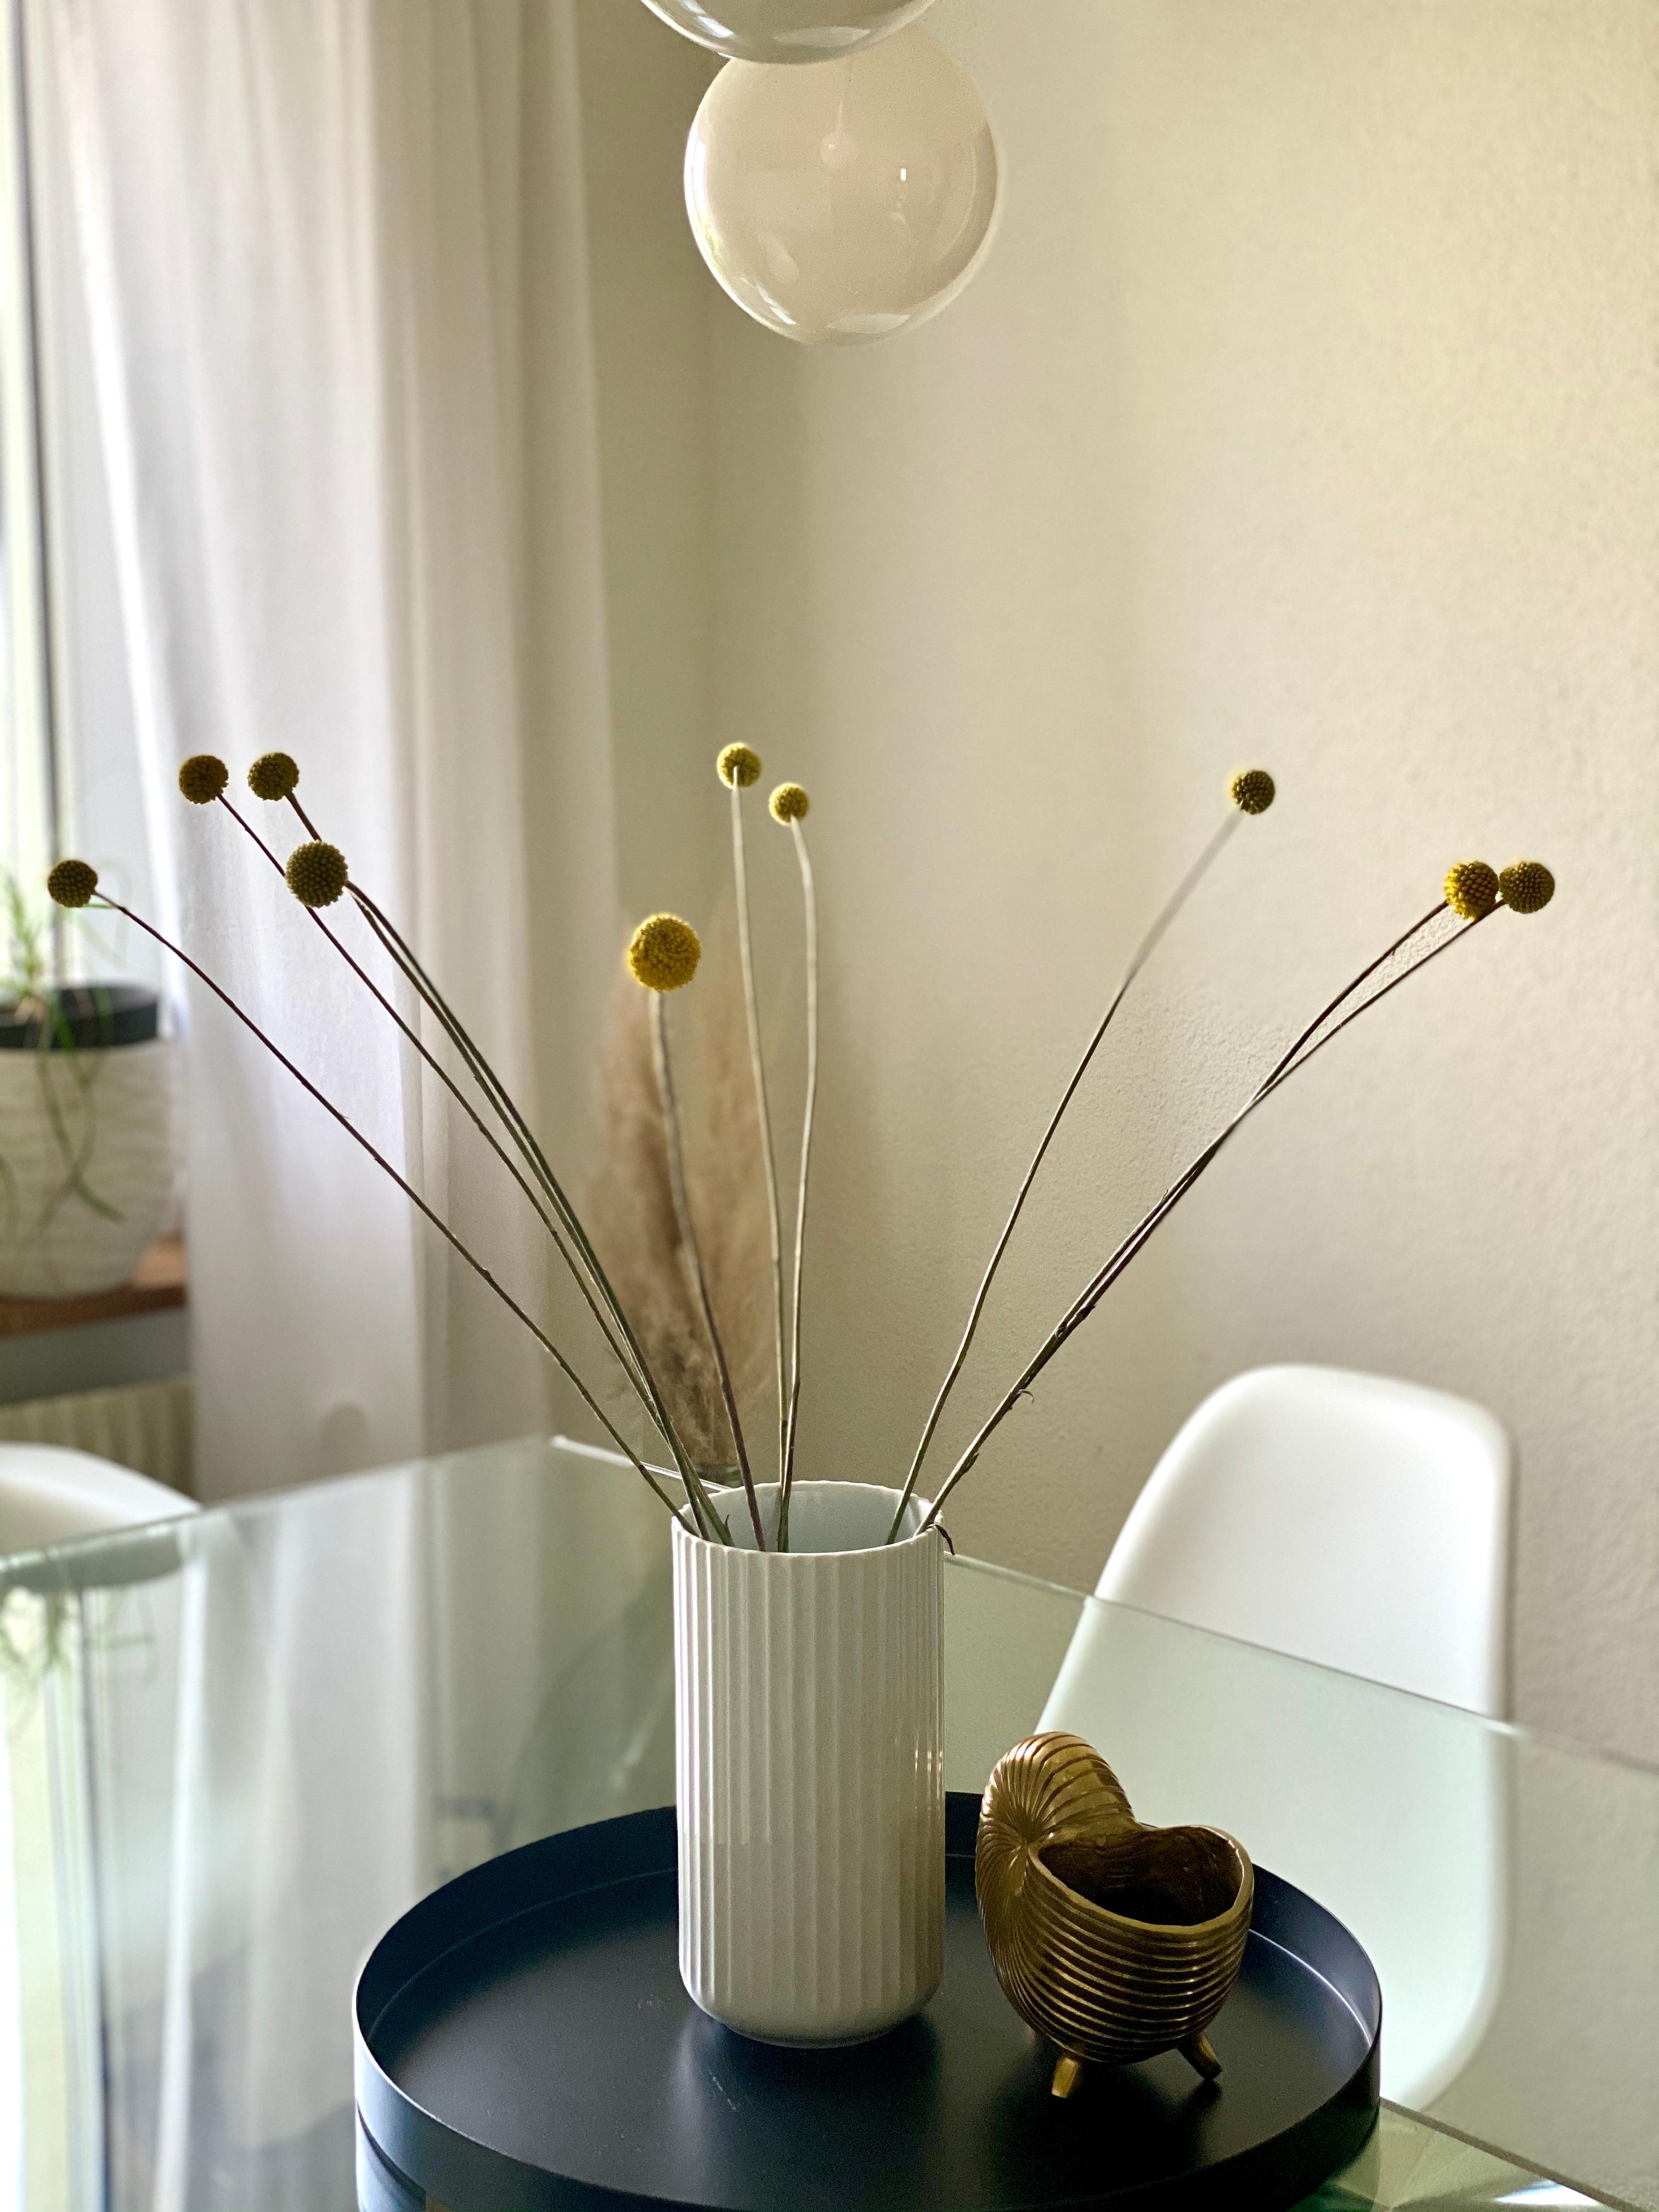 #blumenliebe #vase #blumen #esszimmer #lampe #flowers #couchliebt